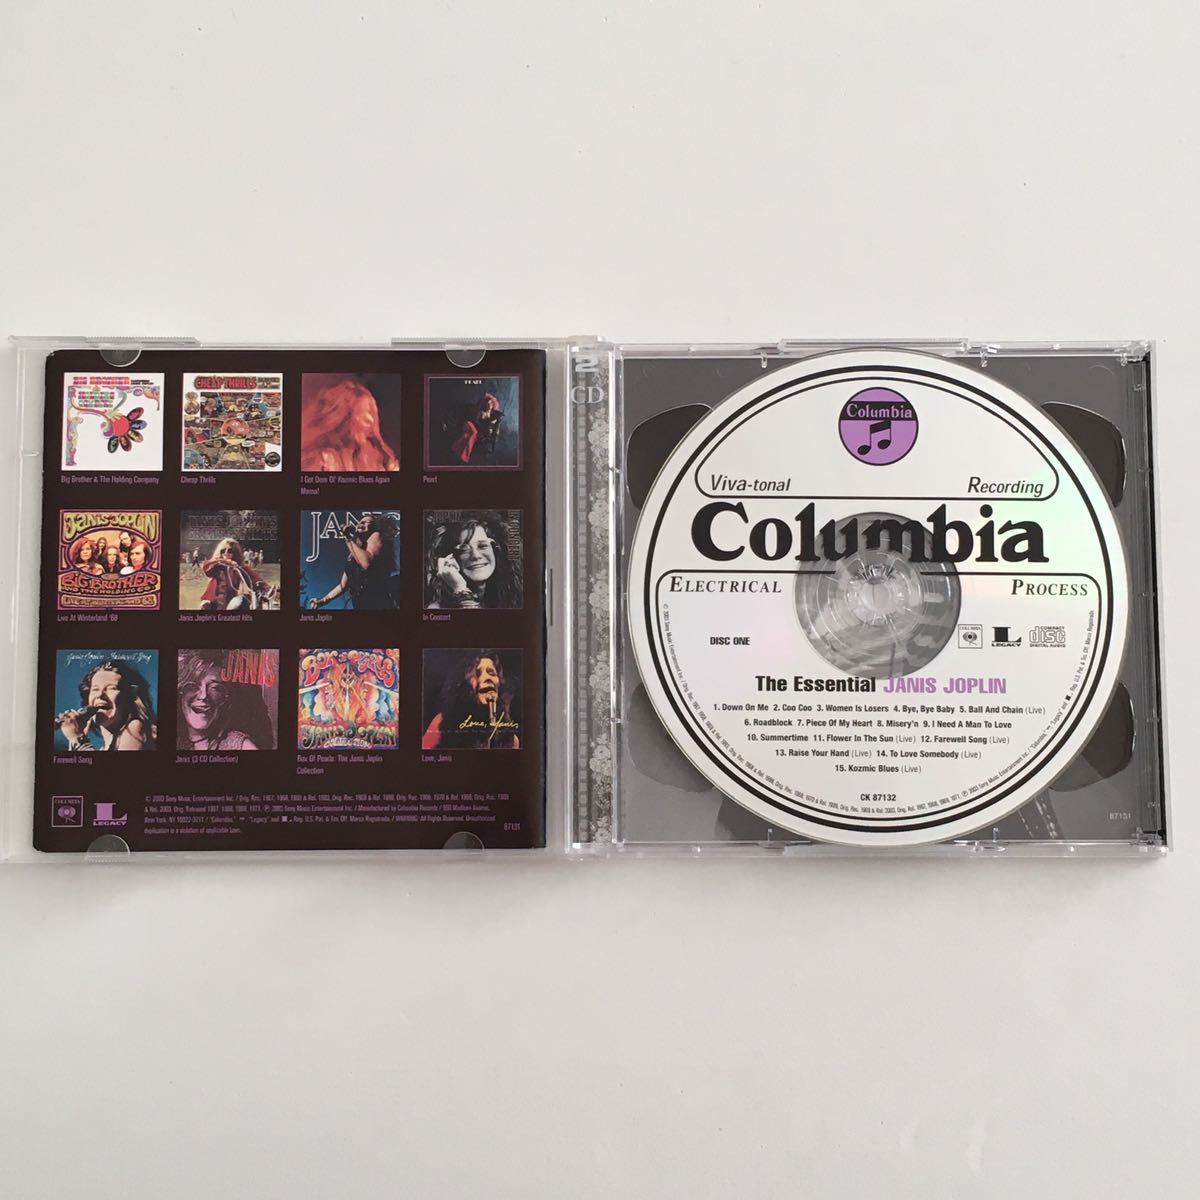 送料無料 評価1000達成記念 ロックCD Janis Joplin “The Essential Janis Joplin” 2CD Columbia Legacy アメリカ盤_画像2